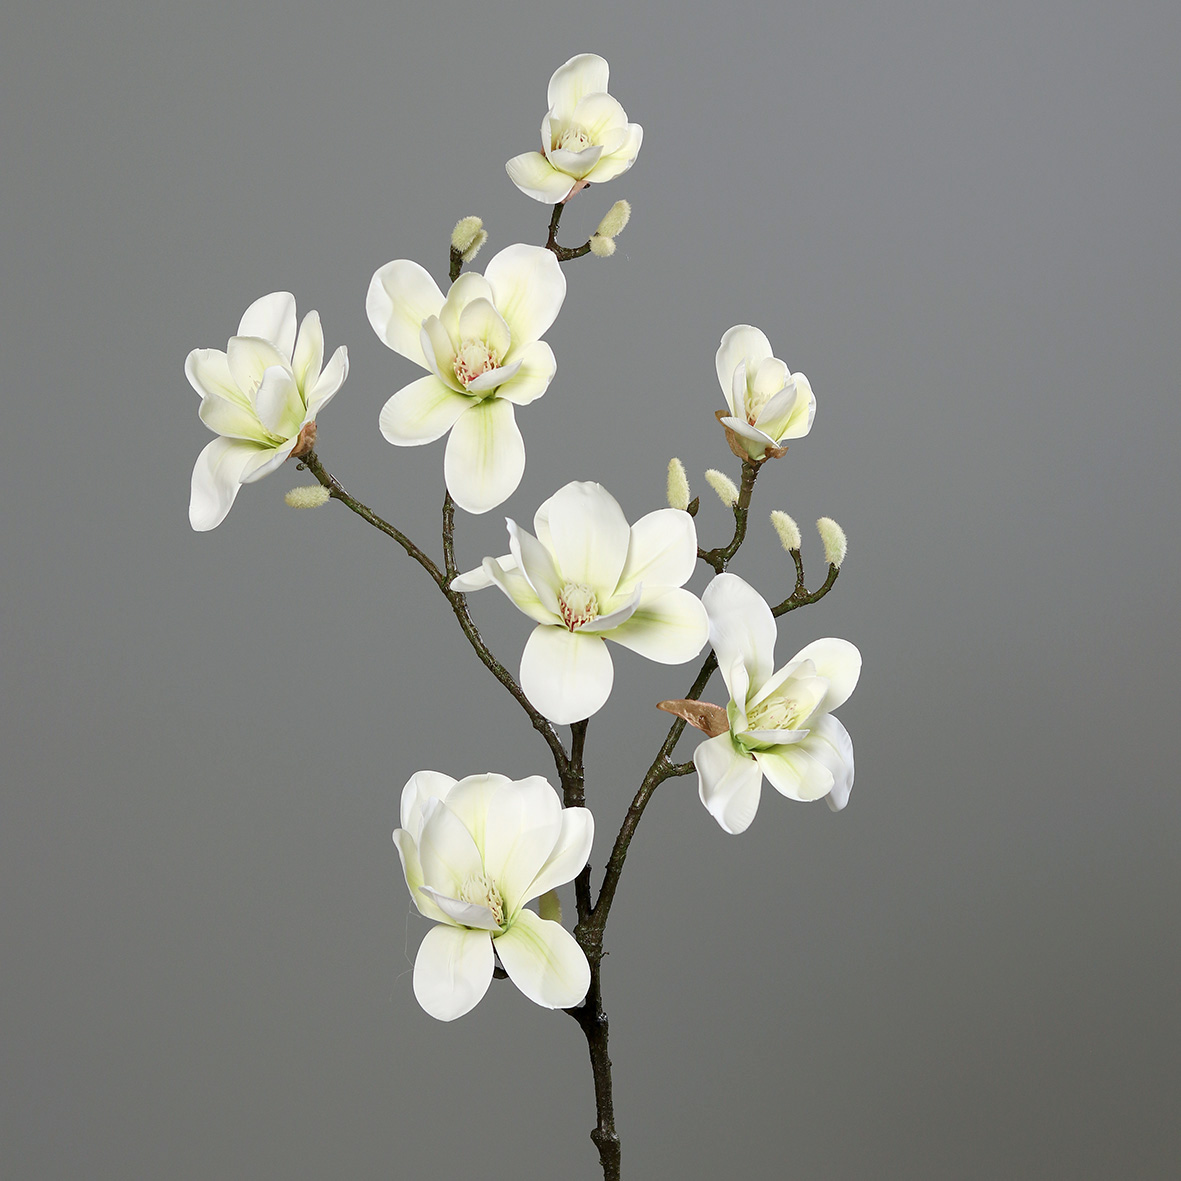 Magnolienzweig Real Touch 100x30cm creme-weiß DP Kunstblumen künstliche Blumen Magnolie Magnolia